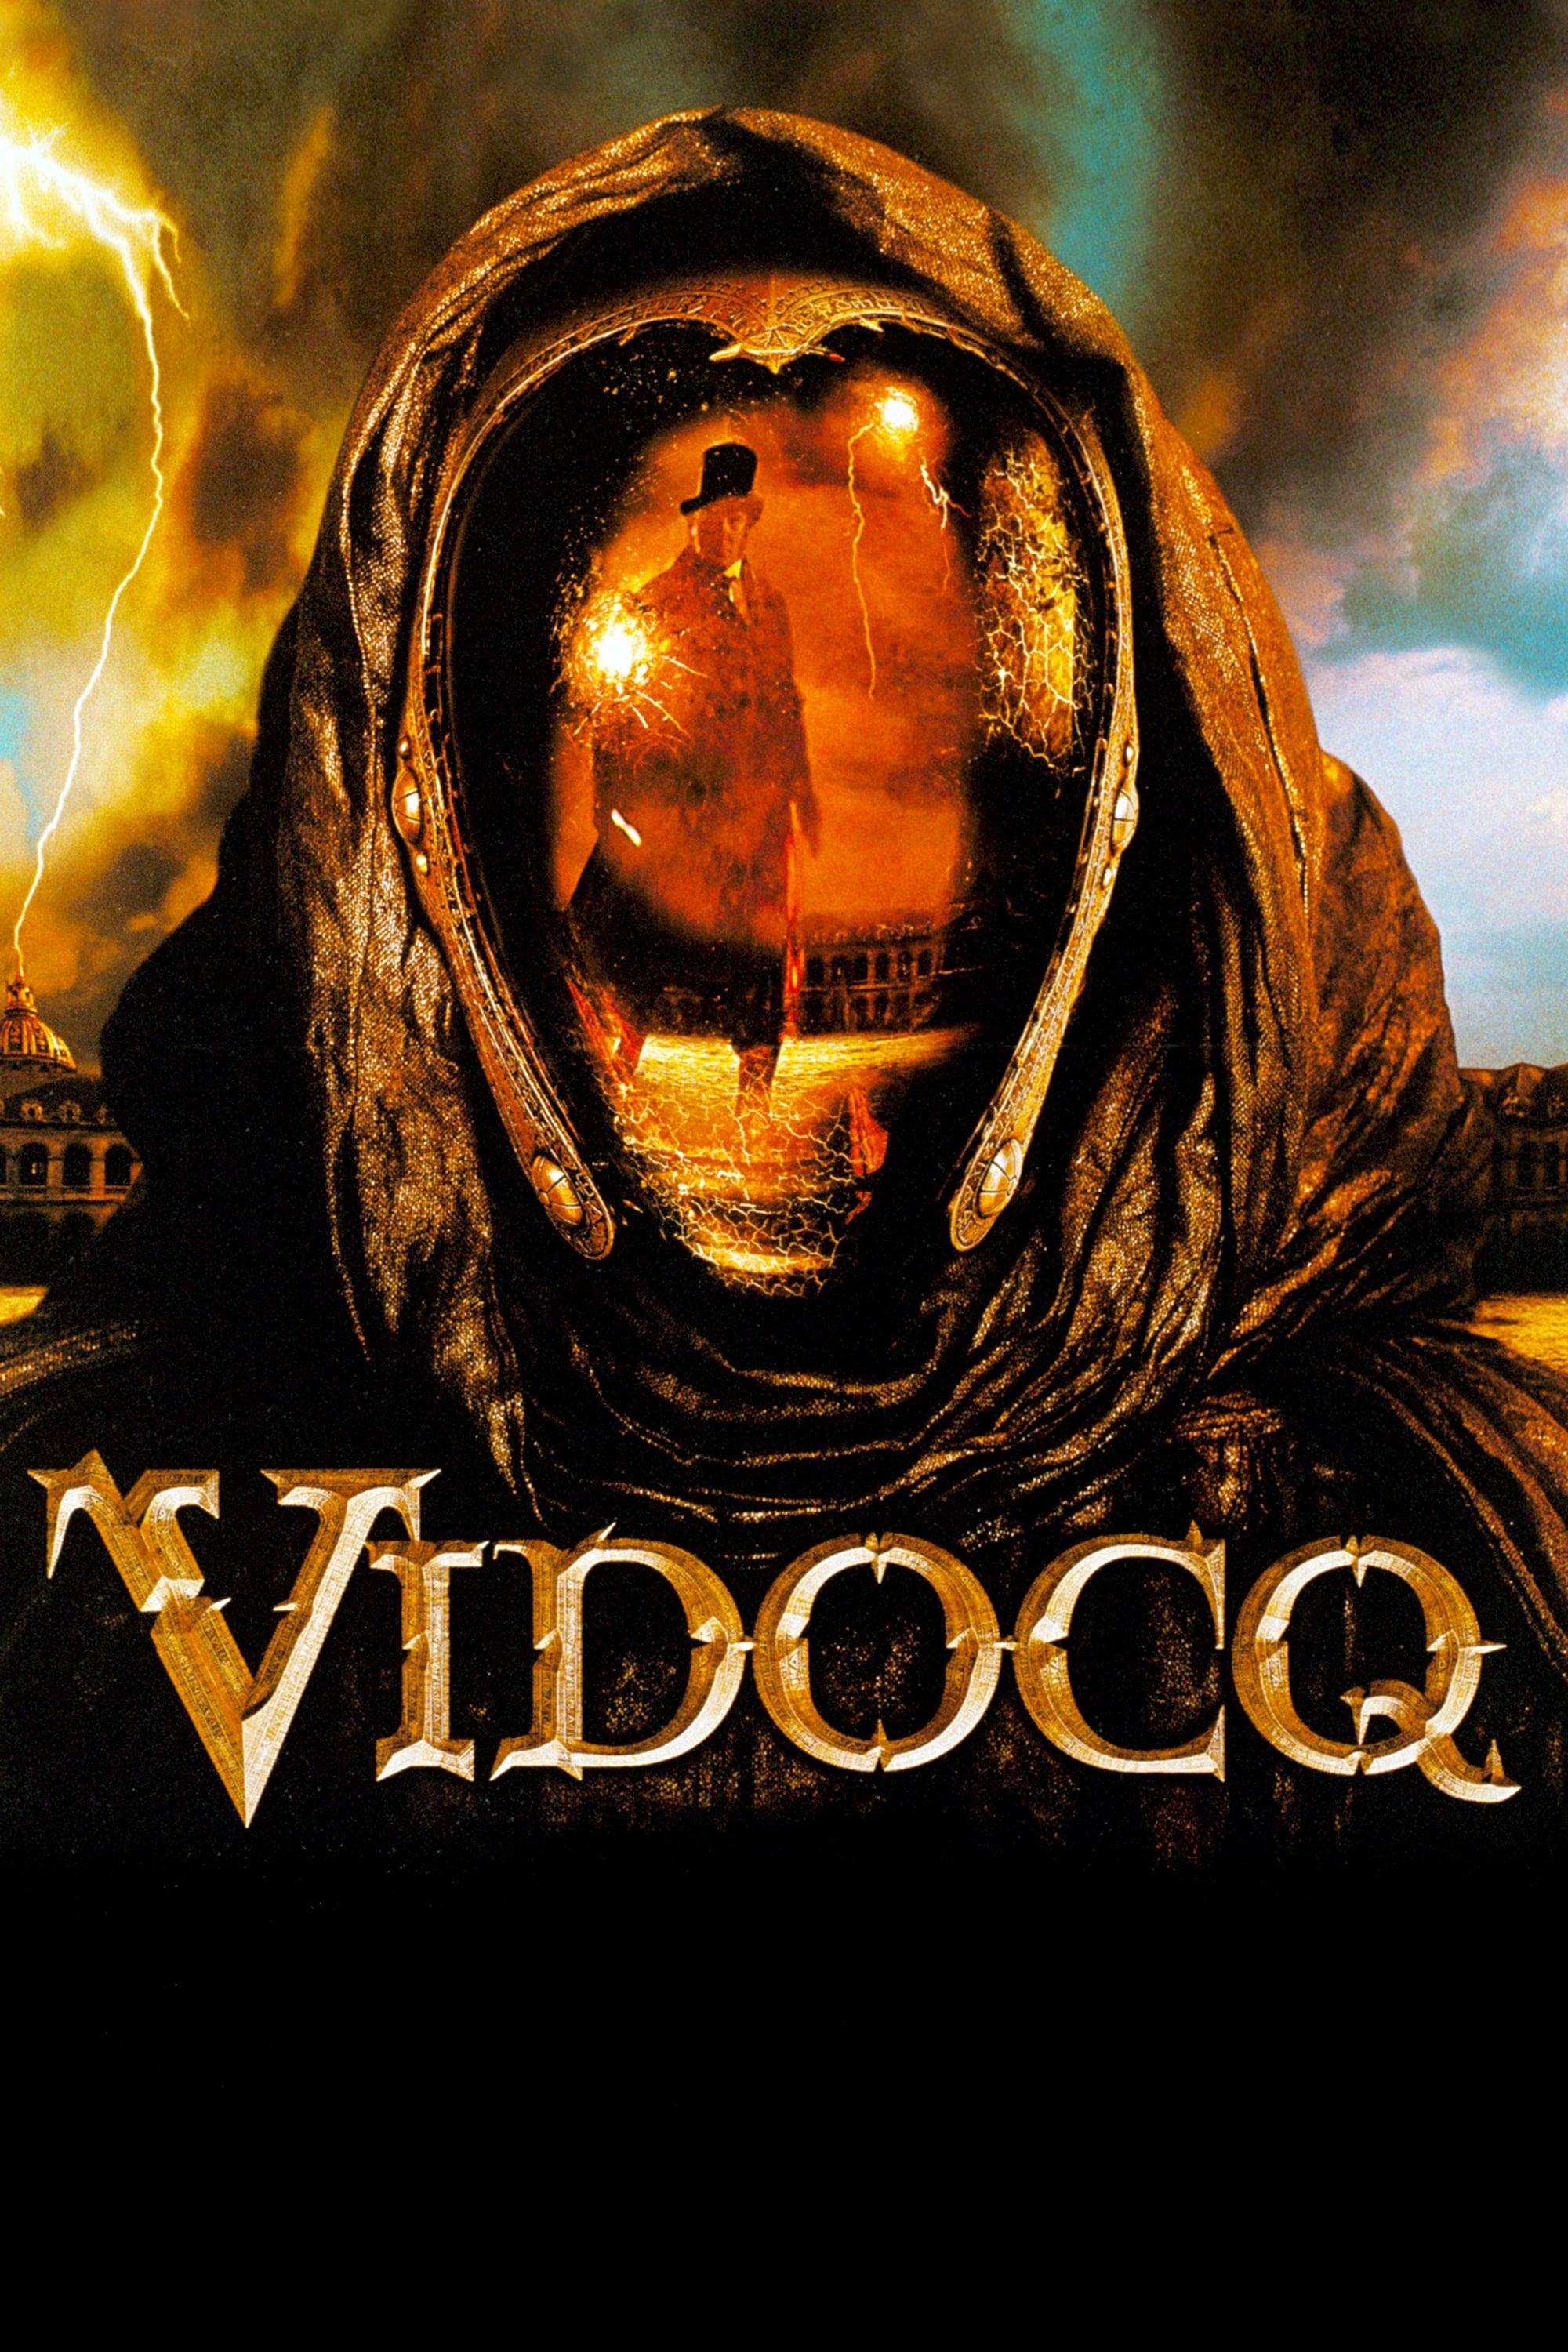 Vidocq poster